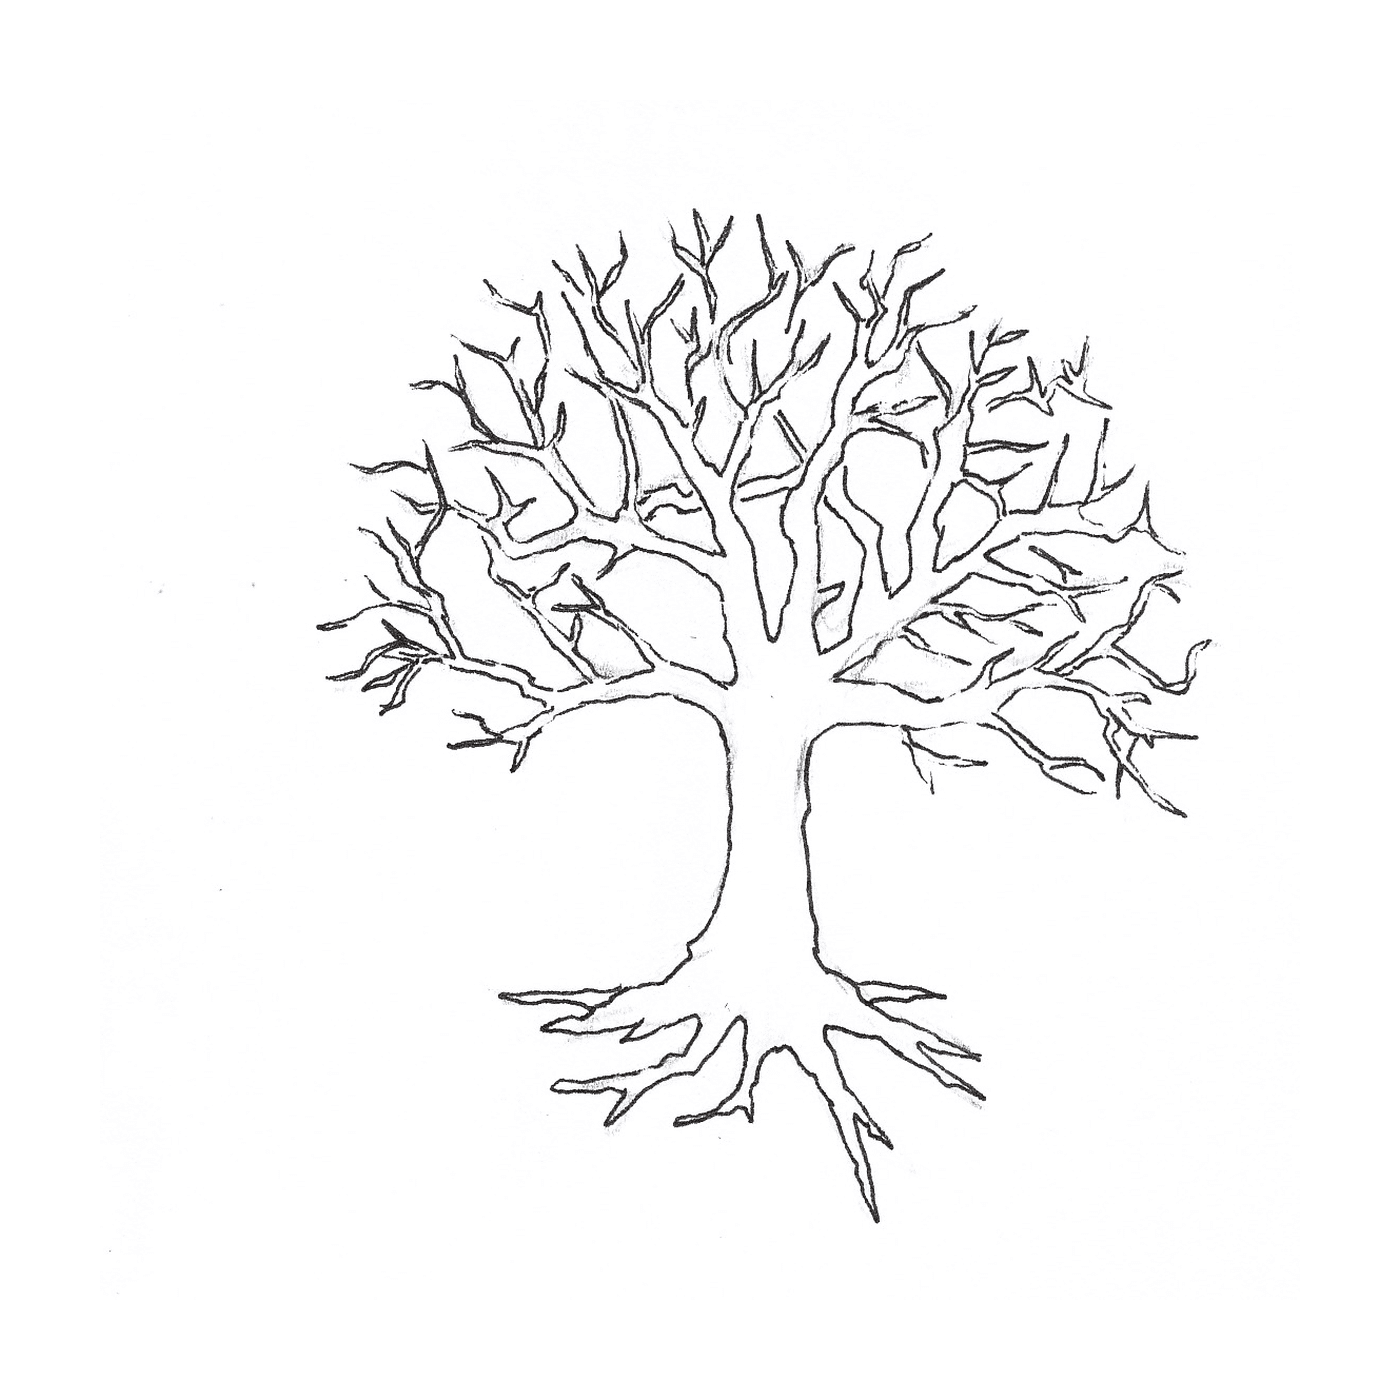   Un arbre dénudé sans feuilles 